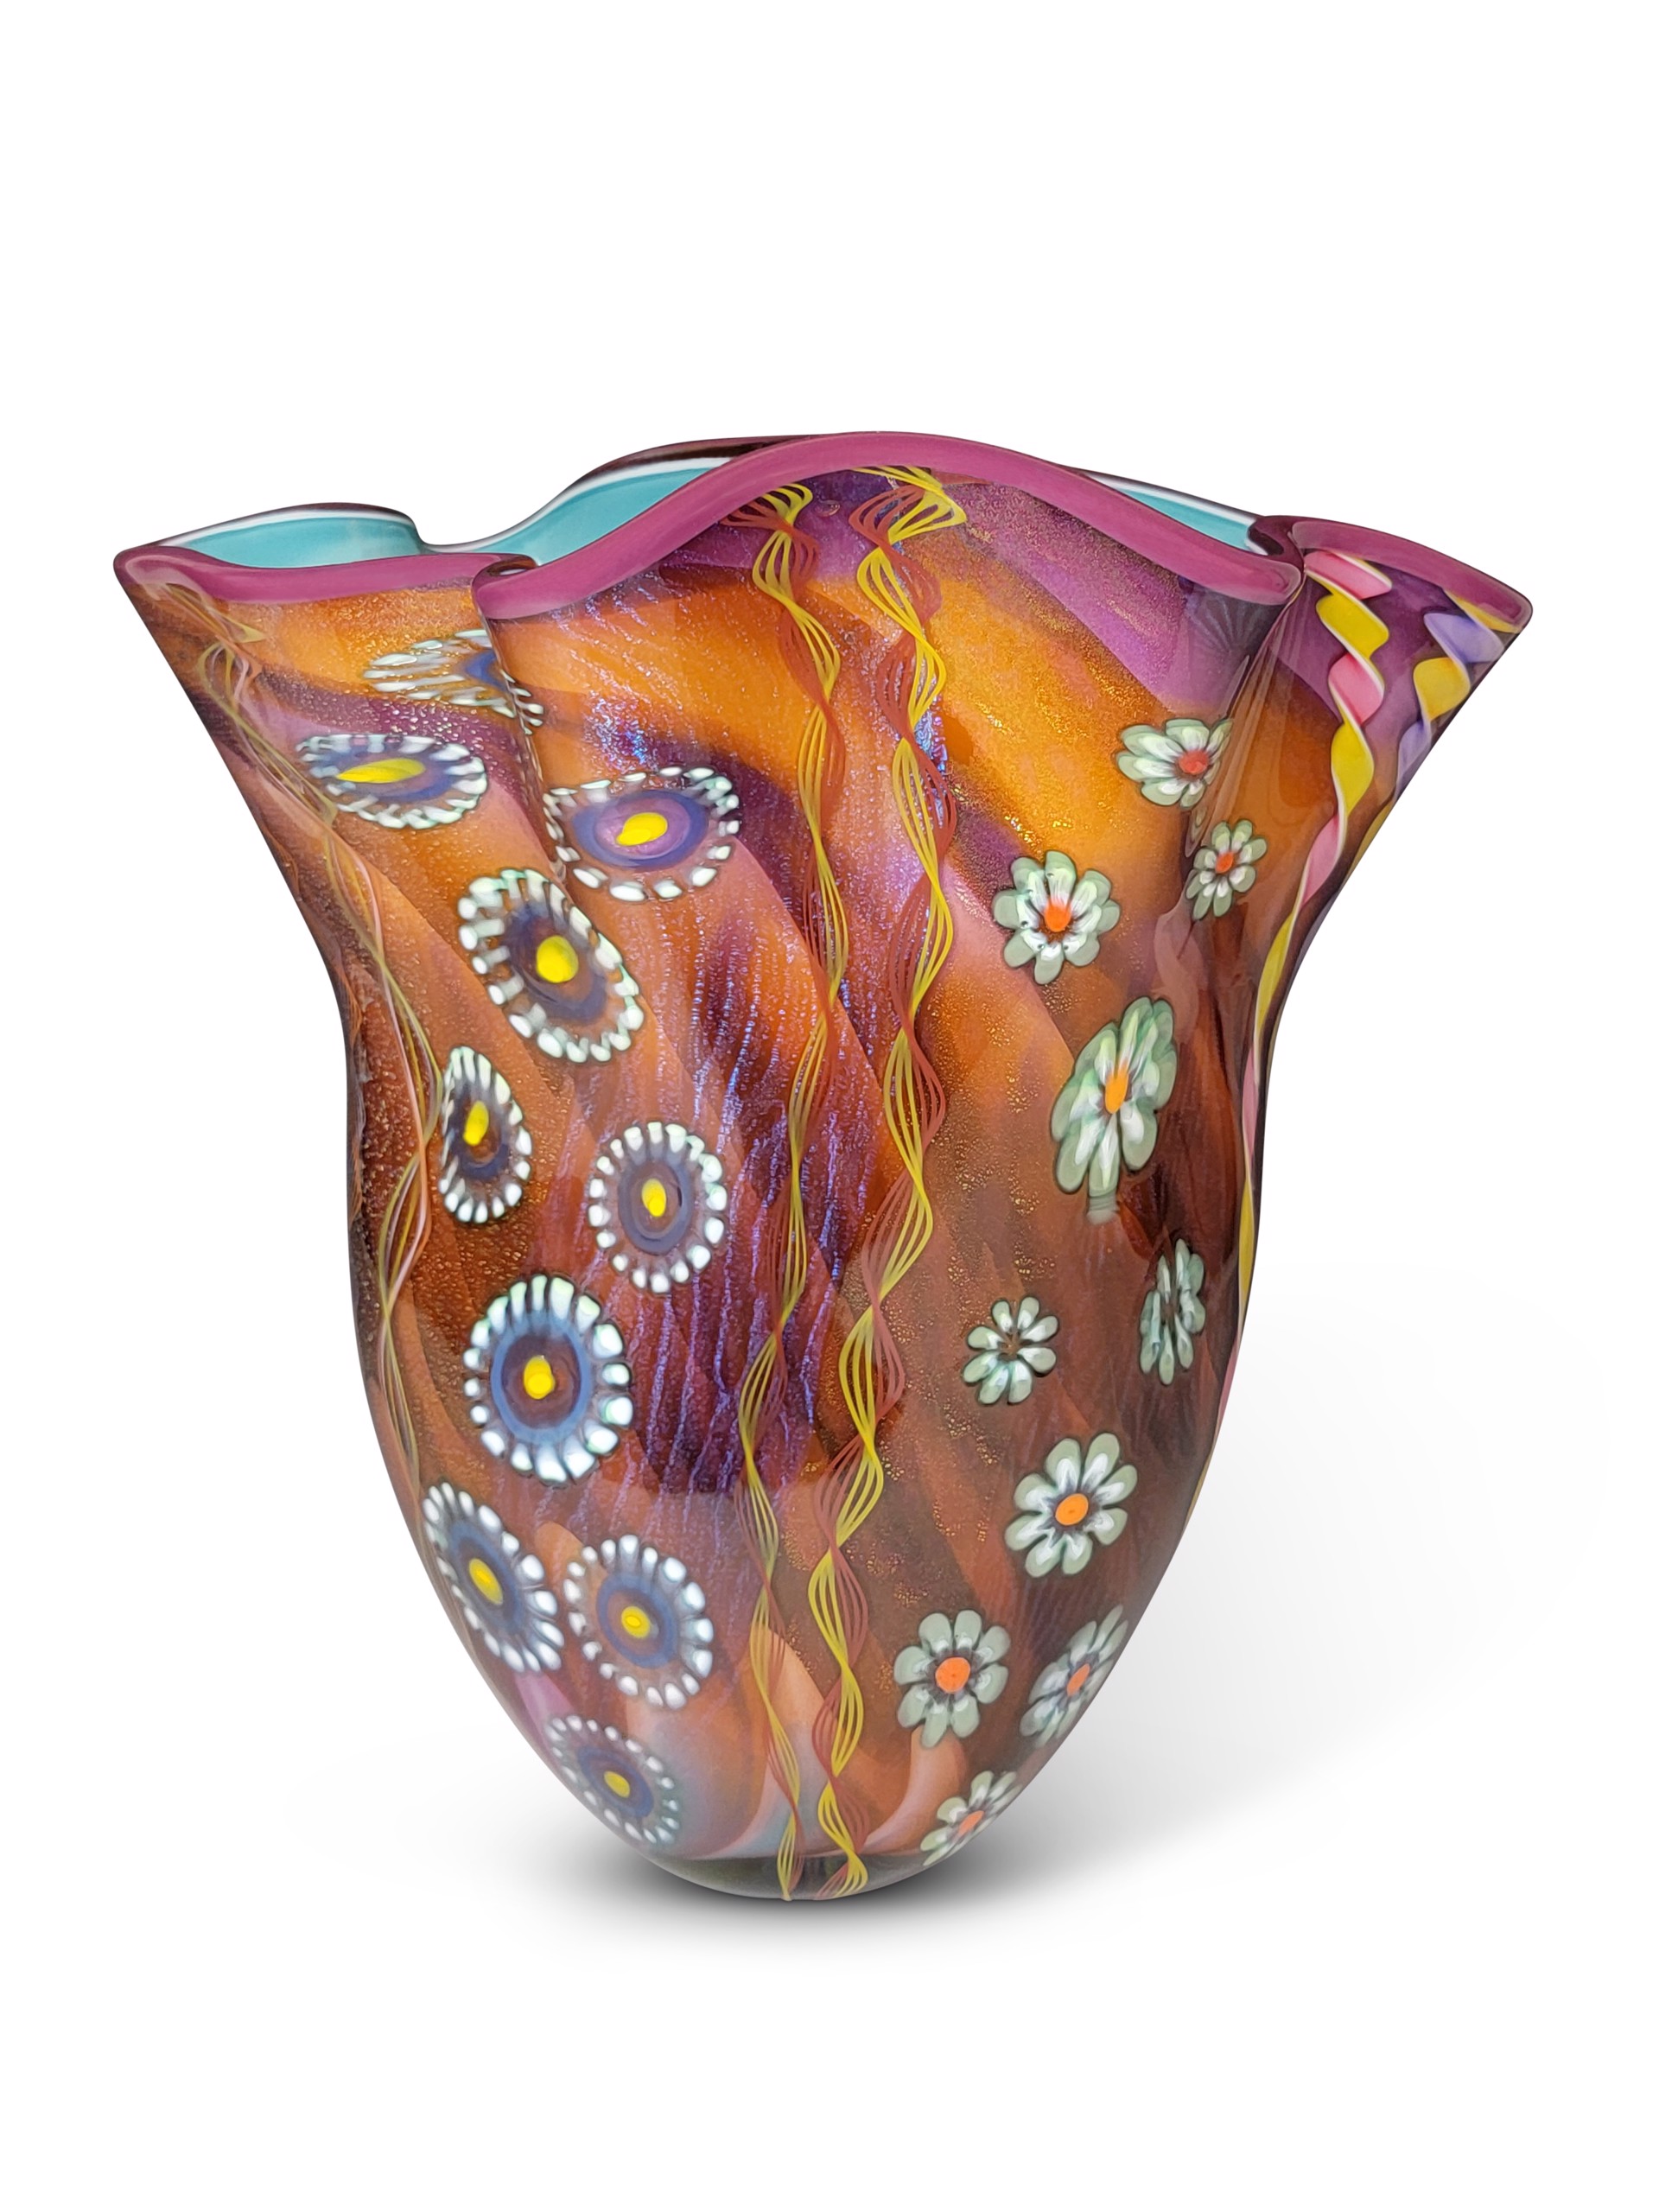 Seascape Fan Vase (Aurora and Amethyst) by Ken Hanson & Ingrid Hanson